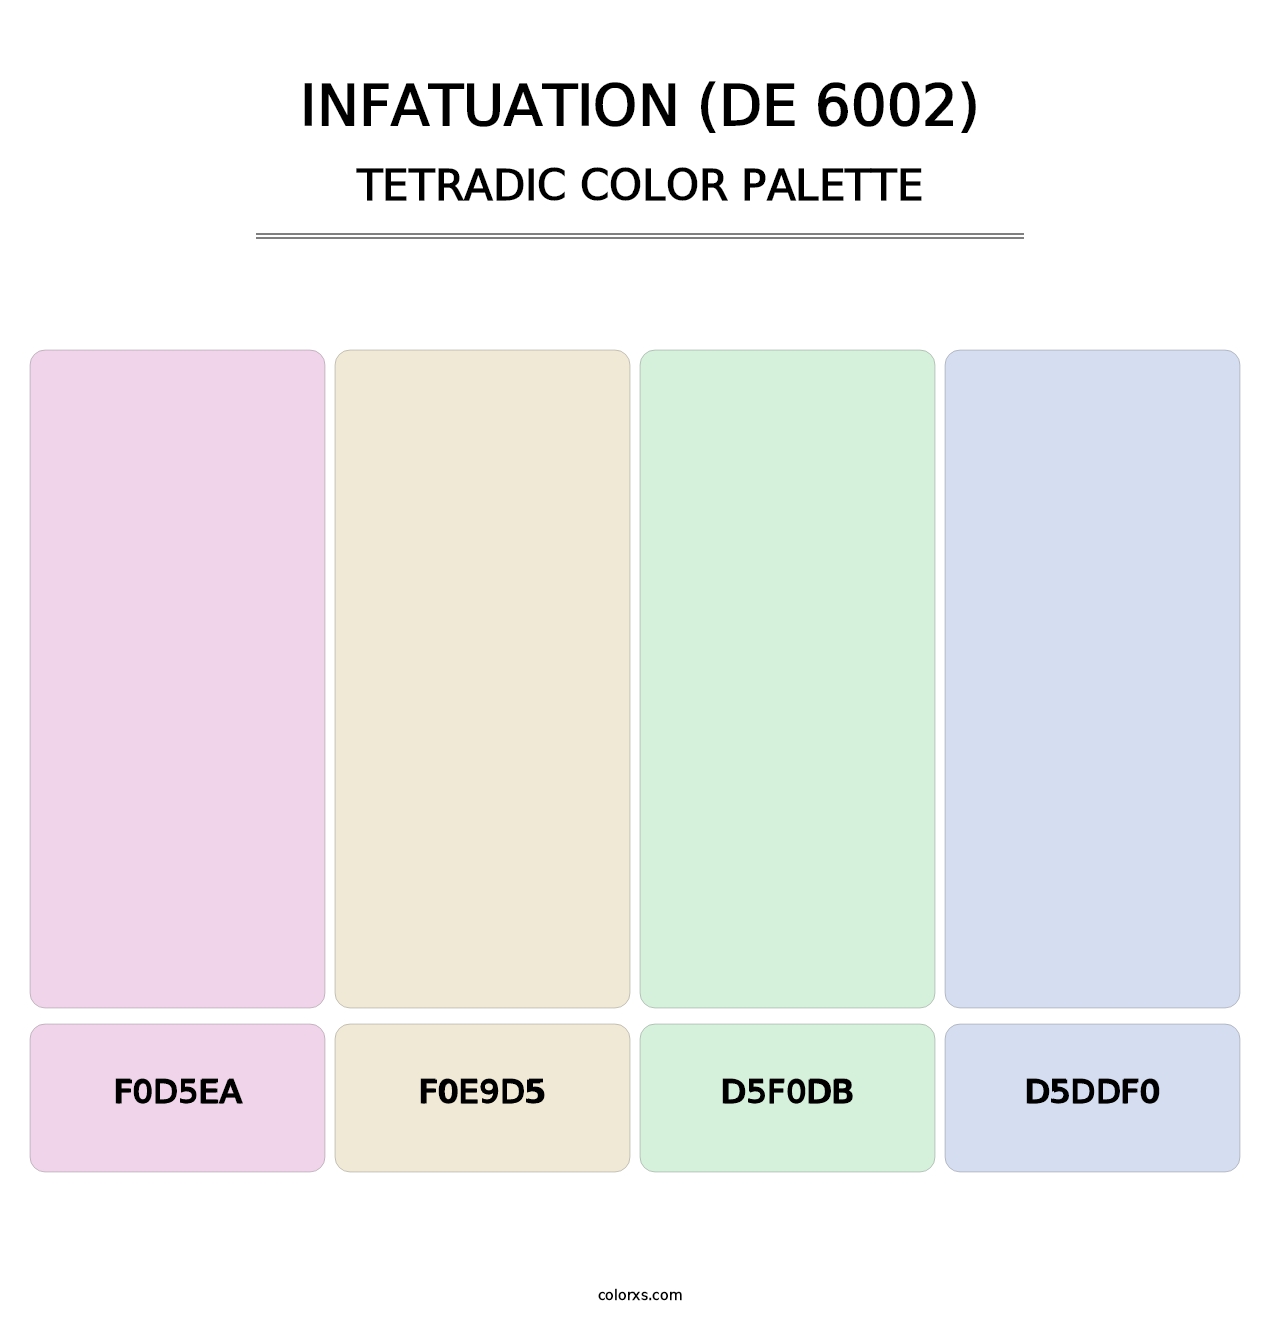 Infatuation (DE 6002) - Tetradic Color Palette